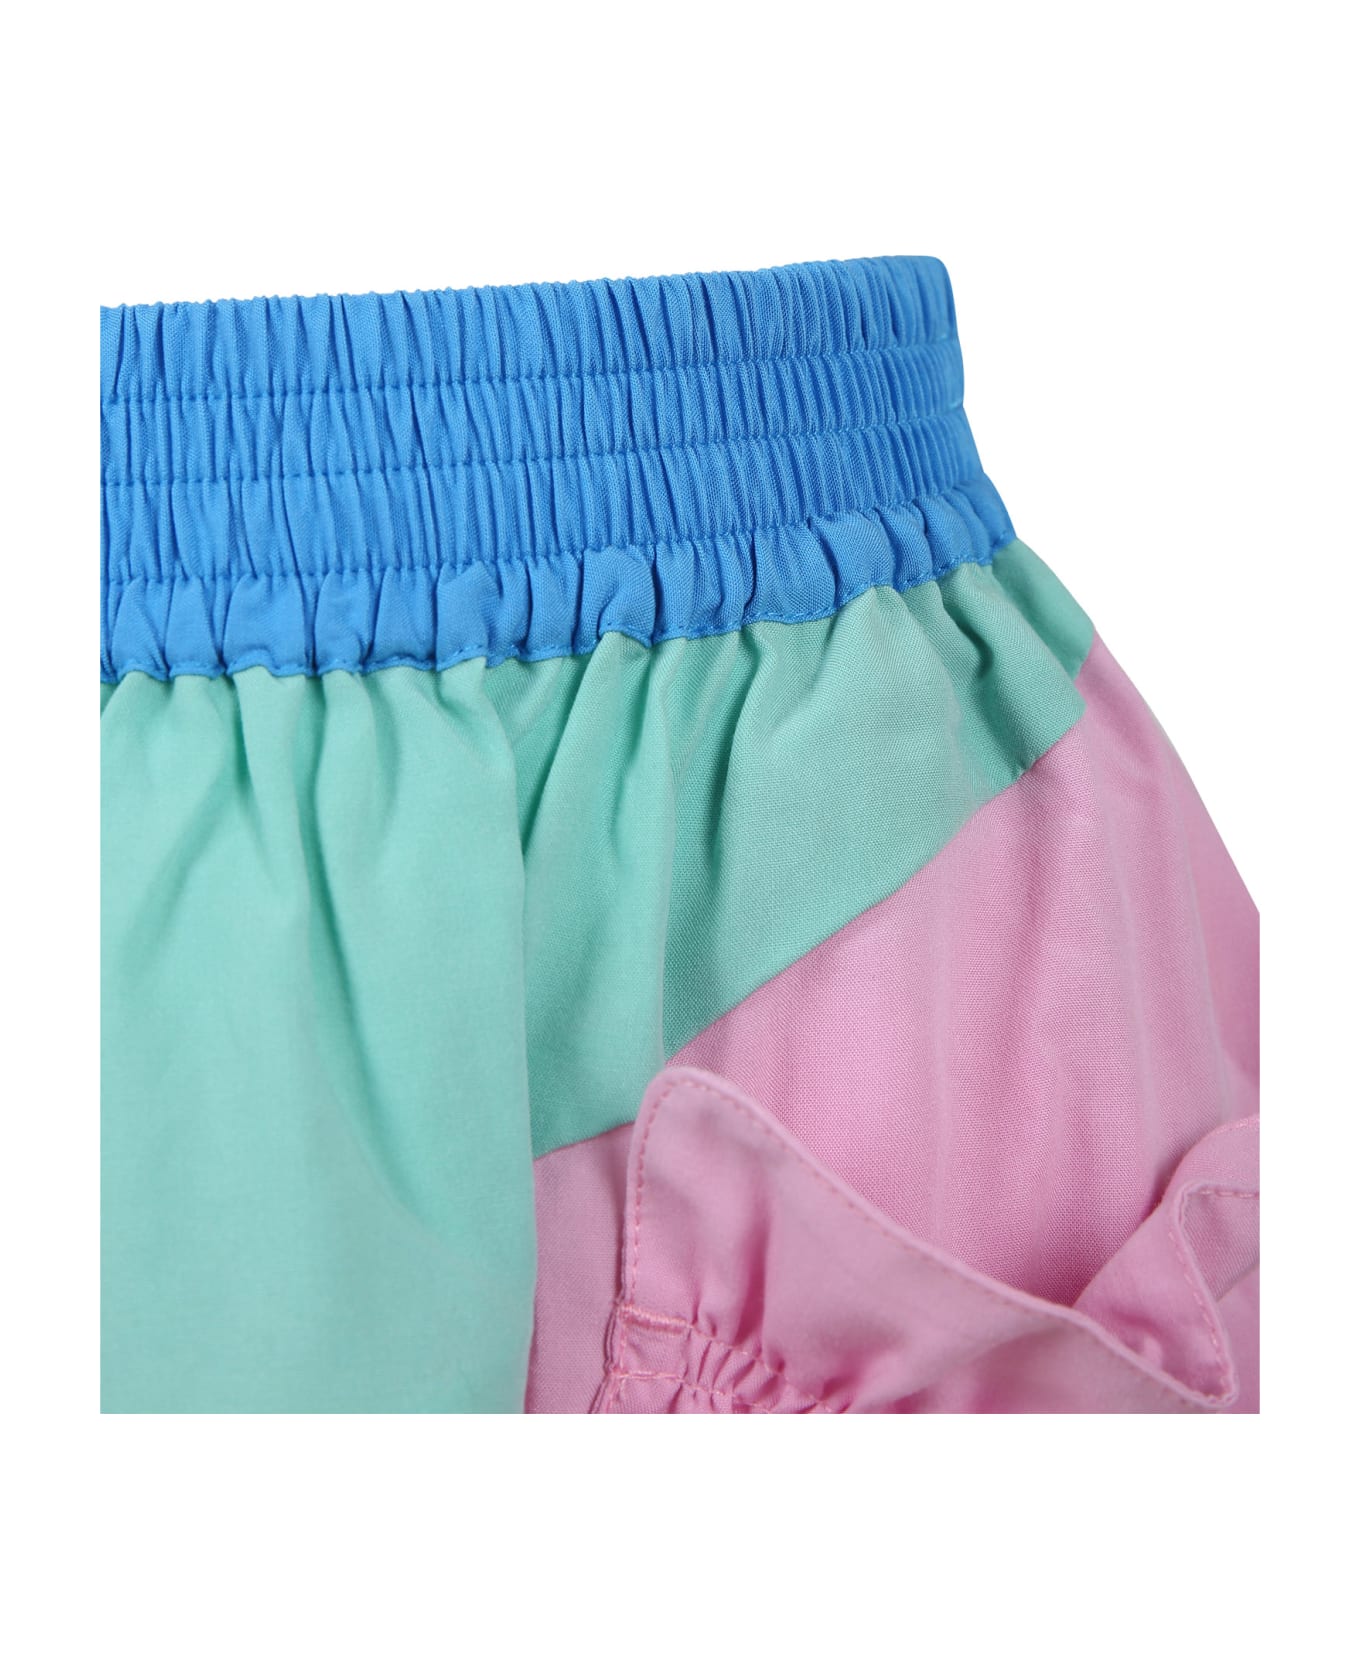 Stella McCartney Kids Multicolor Skirt For Girl - Multicolor ボトムス